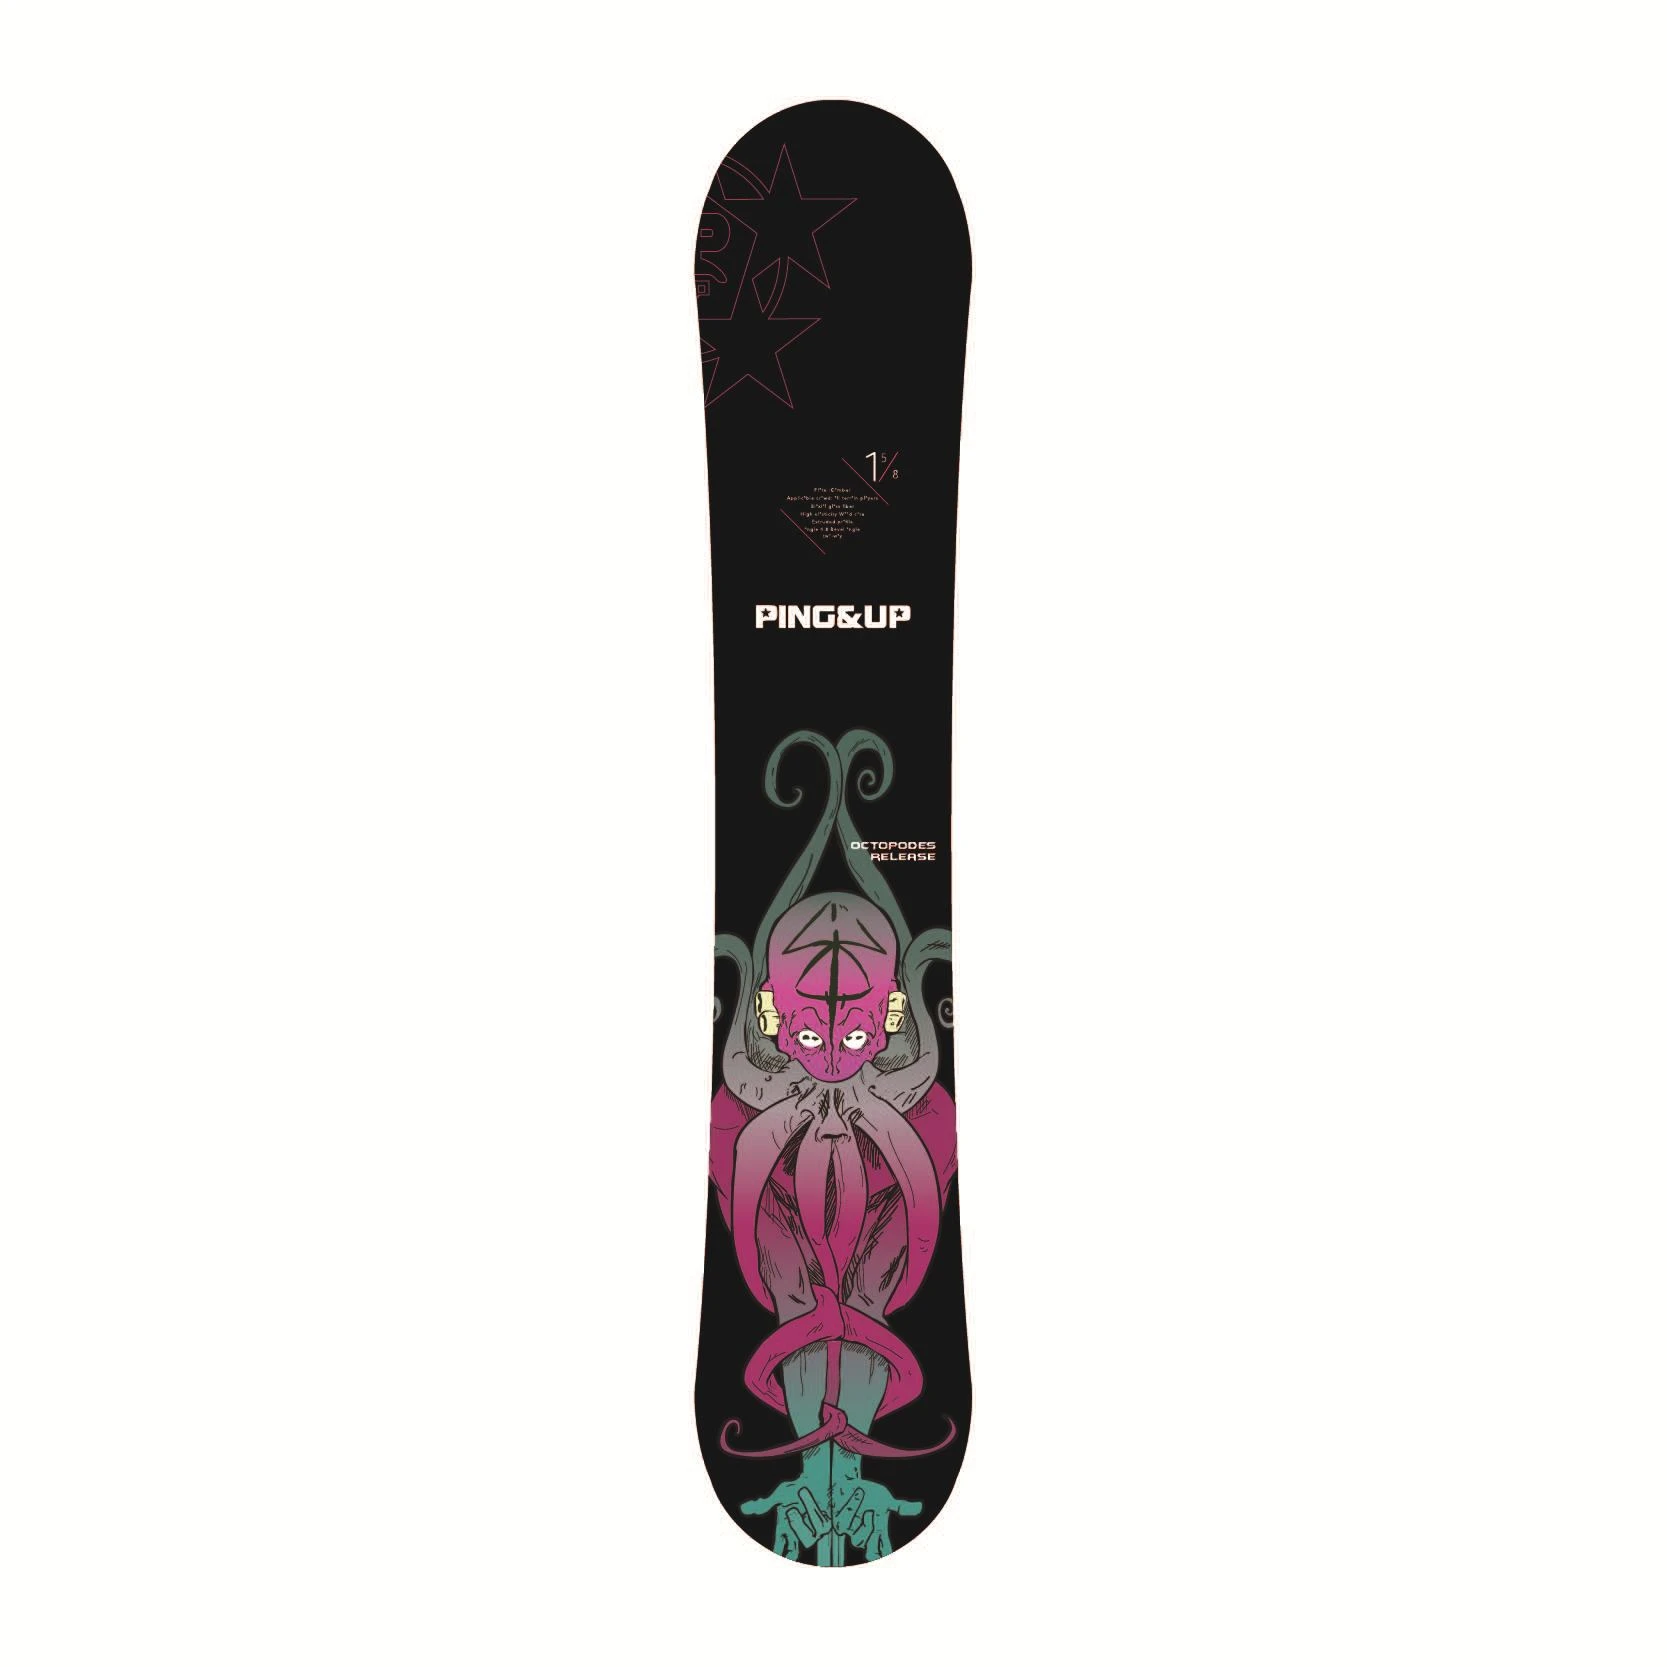 2020 Amazon Best Selling Snowboard Split Board Free Ride Snowboard Sintered Base Skiing Board